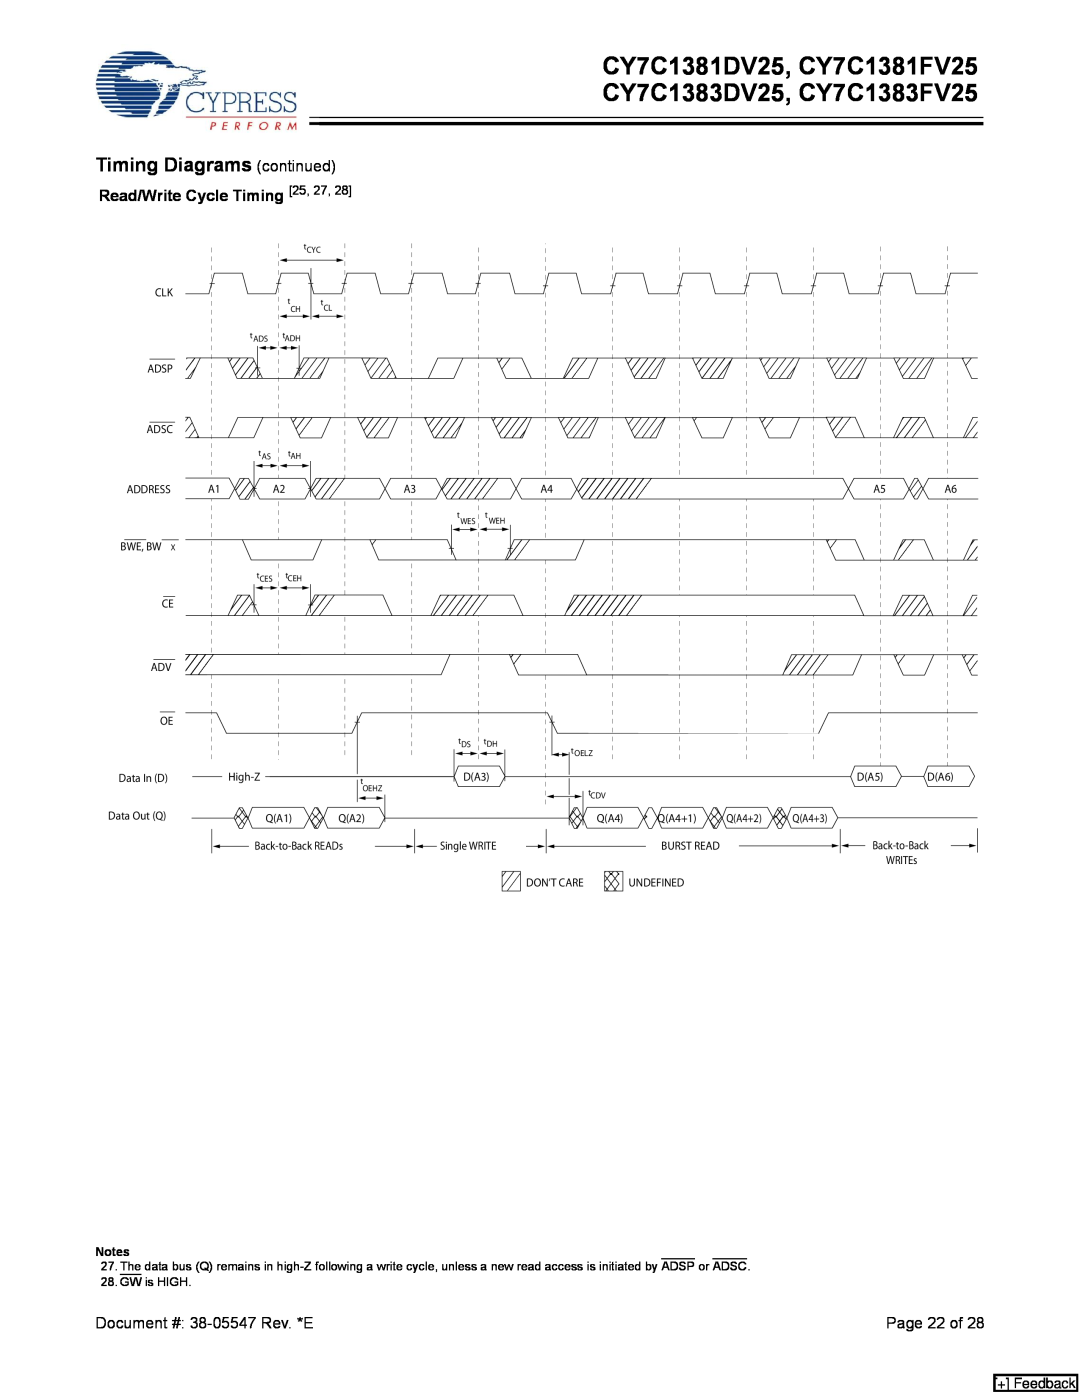 Cypress manual CY7C1381DV25, CY7C1381FV25 CY7C1383DV25, CY7C1383FV25, Timing Diagrams continued, Page 22 of, + Feedback 